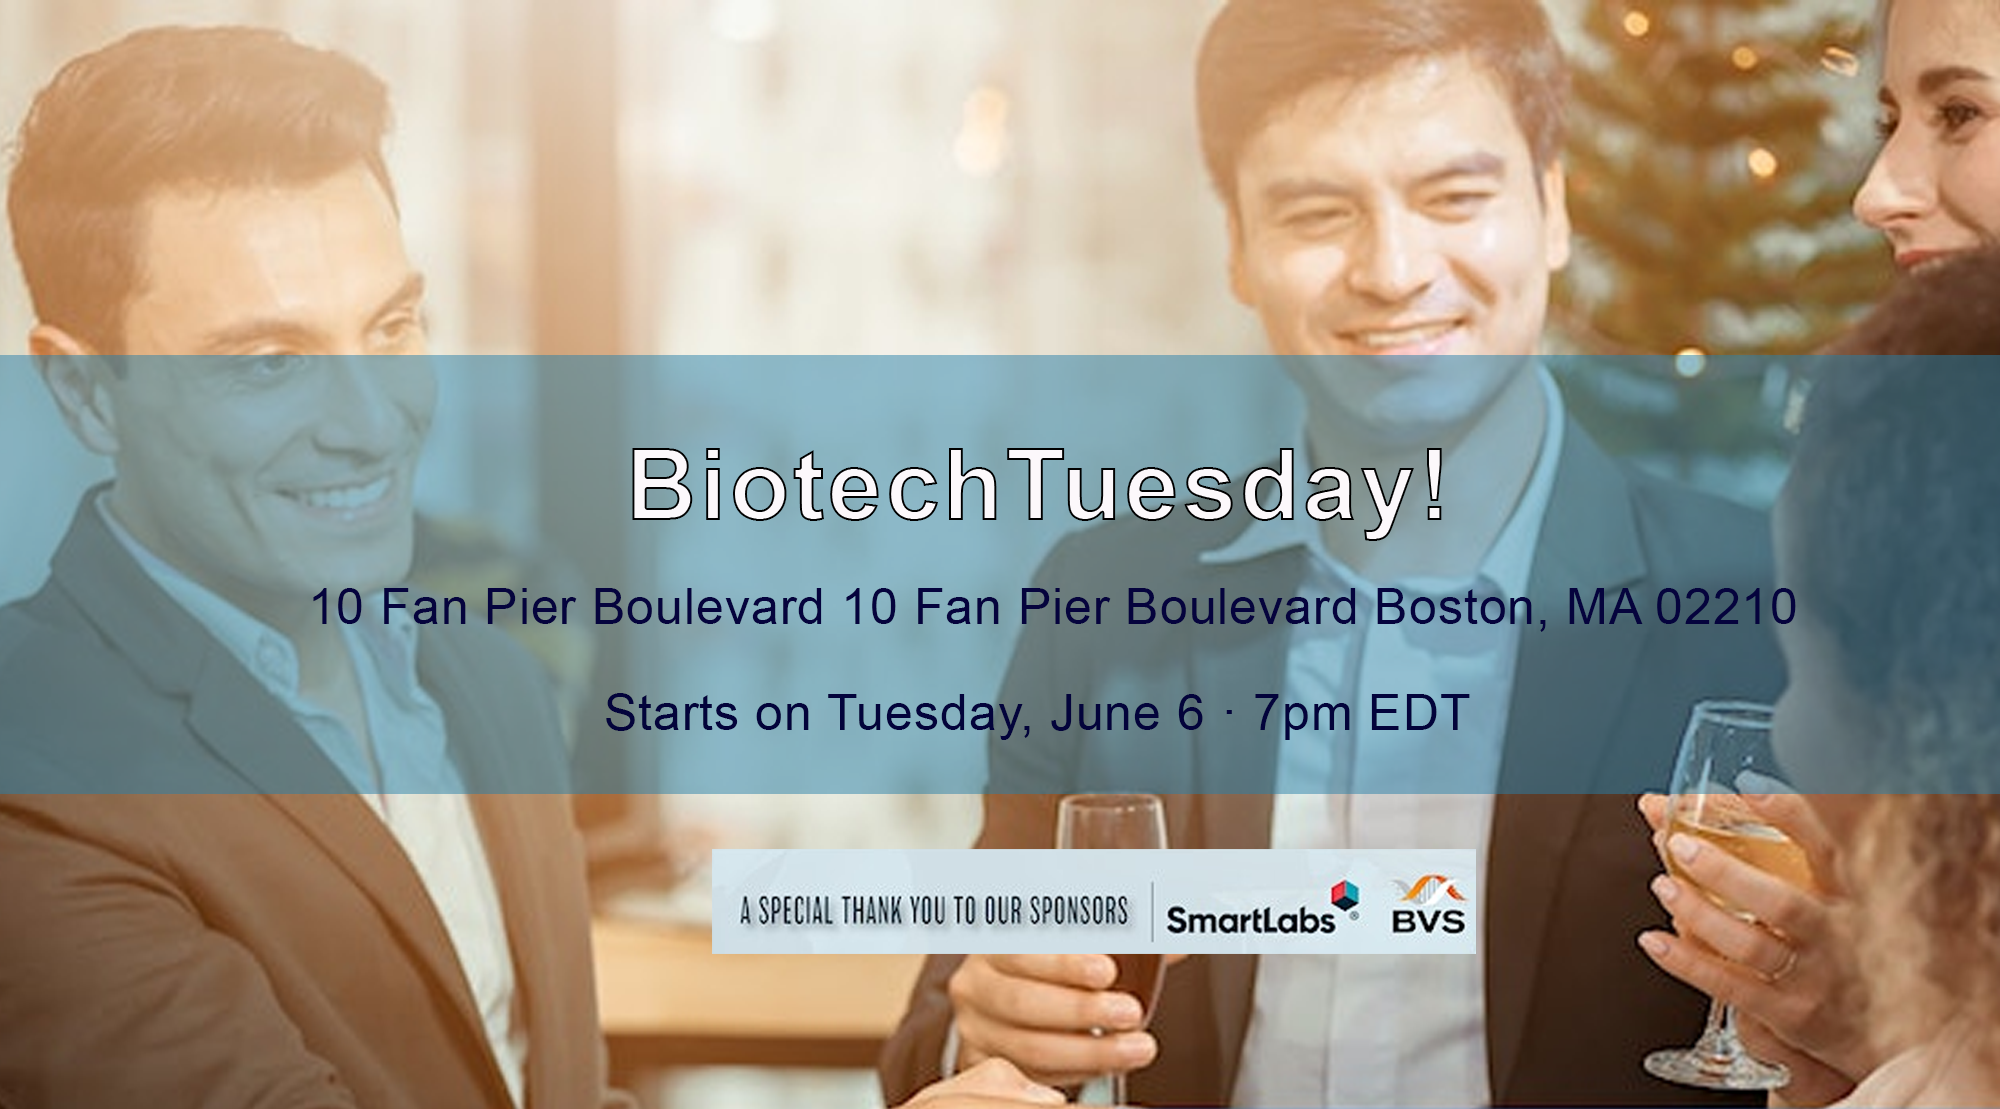 Biotech Tuesday! Relaunch